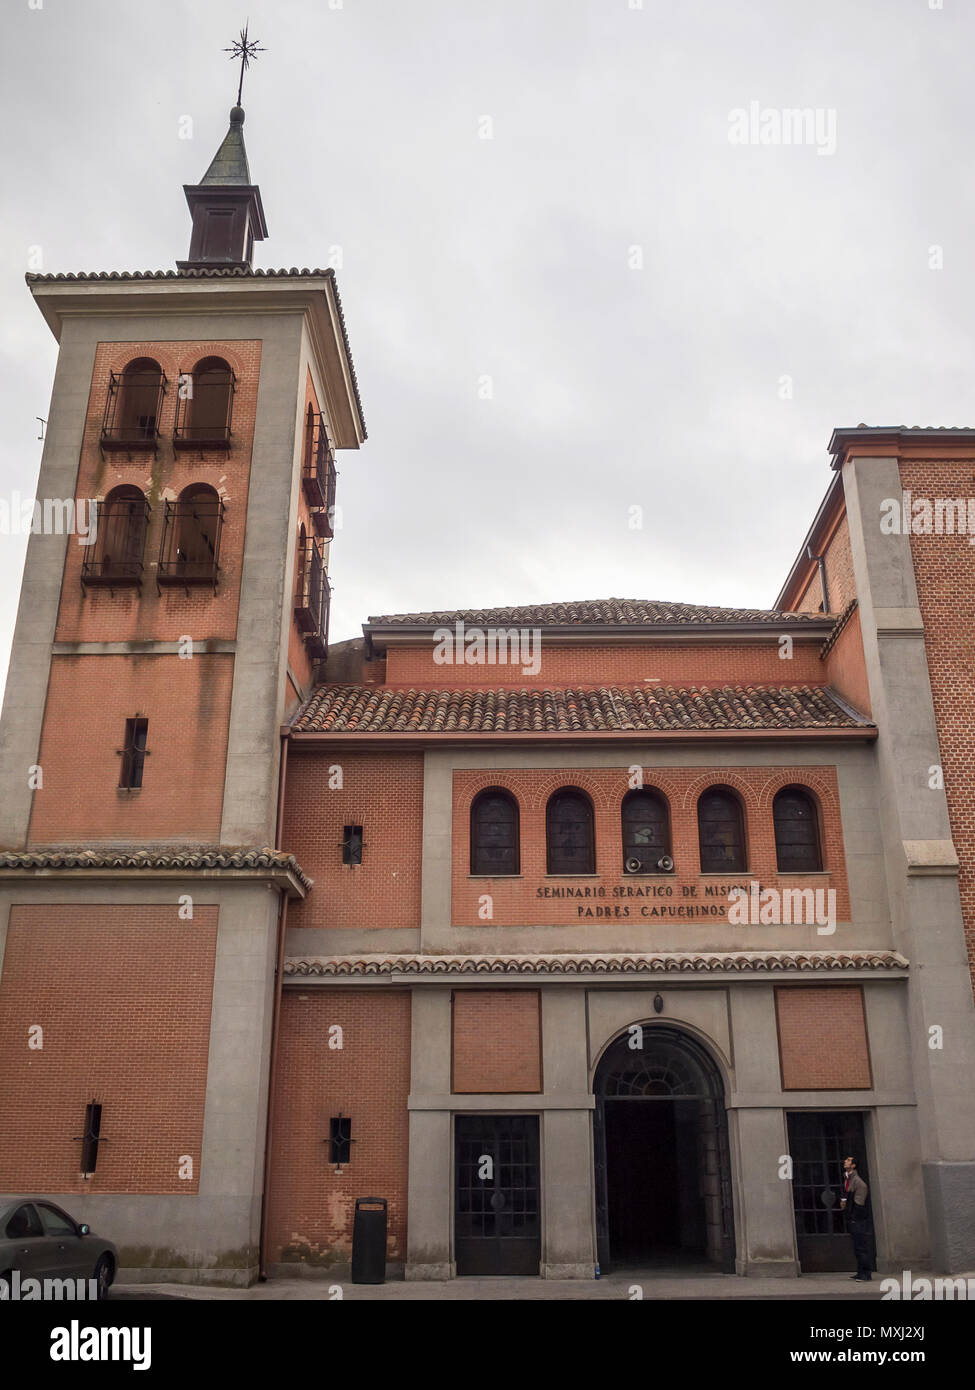 Convento de los padres capuchinos que contiene el Cristo de El Pardo. El Pardo. Madrid. España Stock Photo